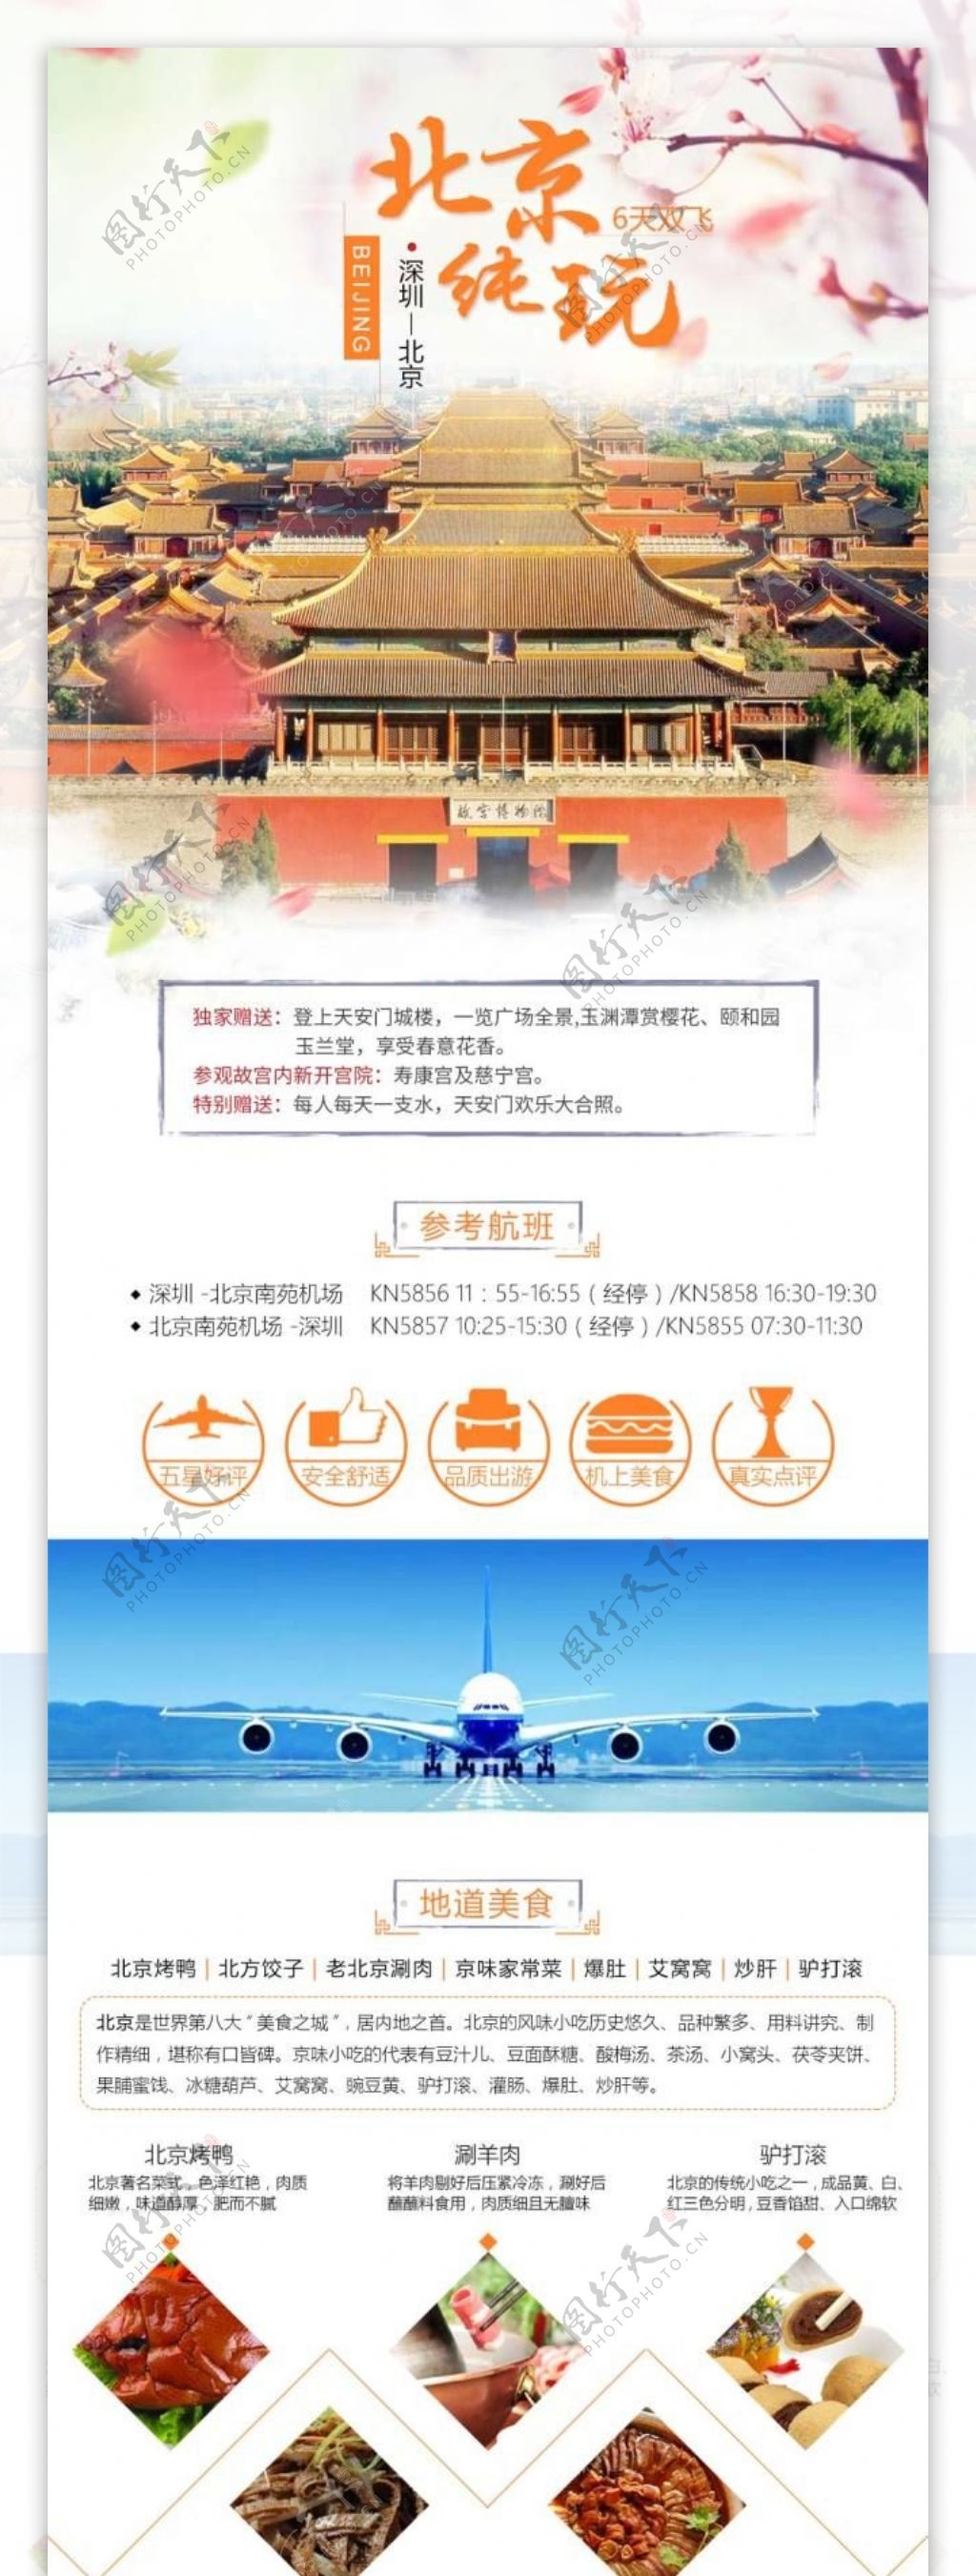 北京双飞6天旅游详情设计